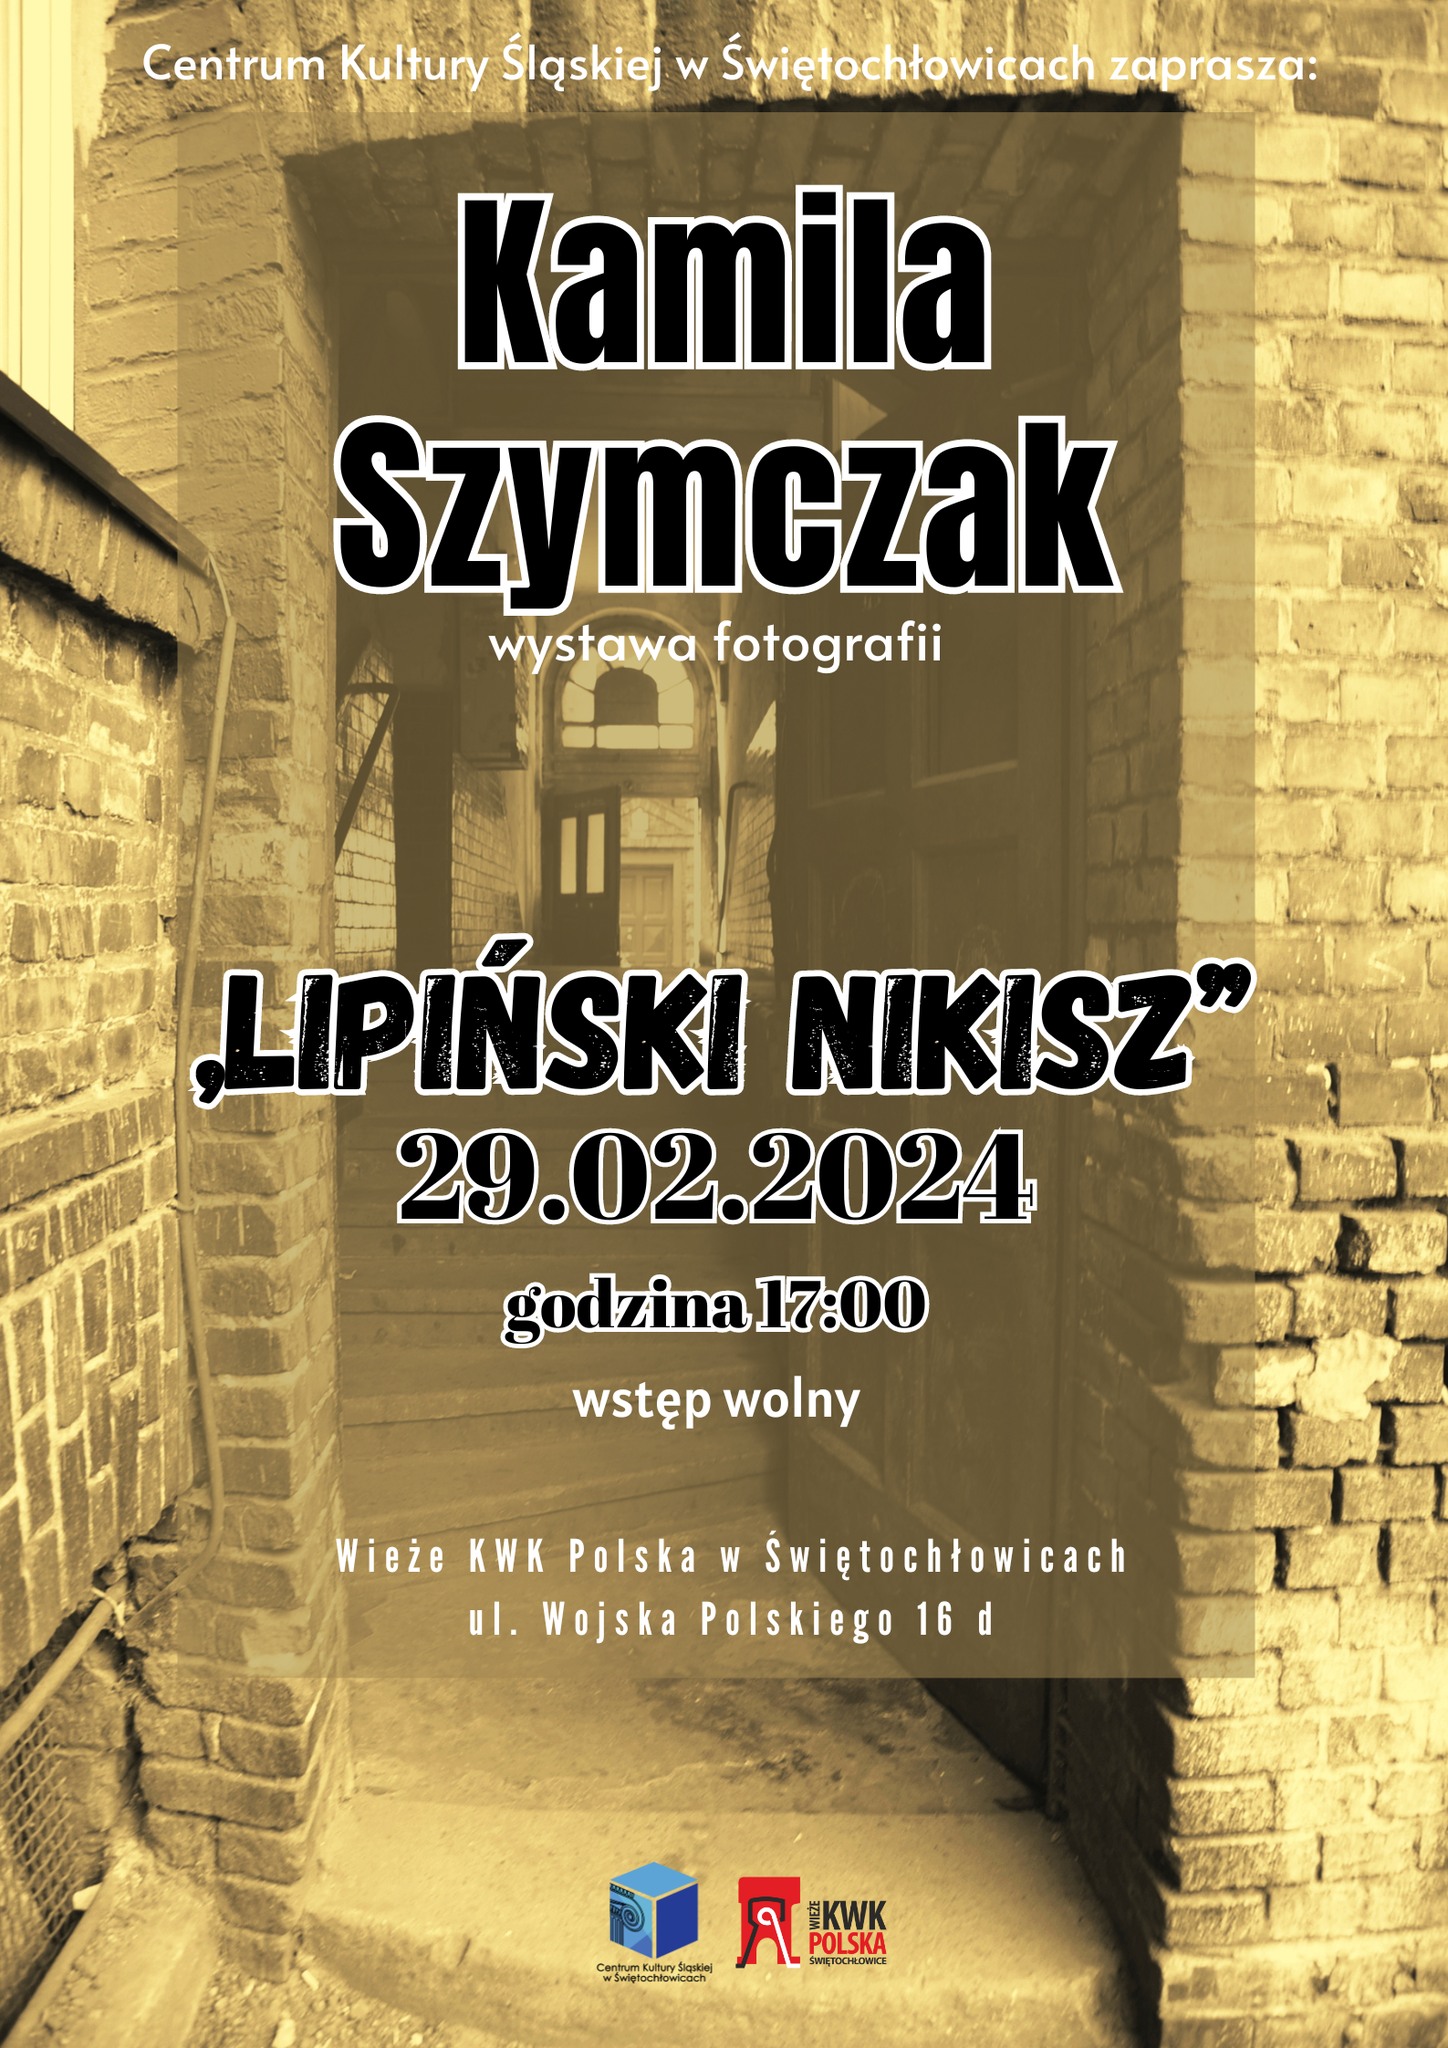 Zdjęcie: Świętochłowice: Wystawa fotografii Kamili Szymczak "Lipiński Nikisz"